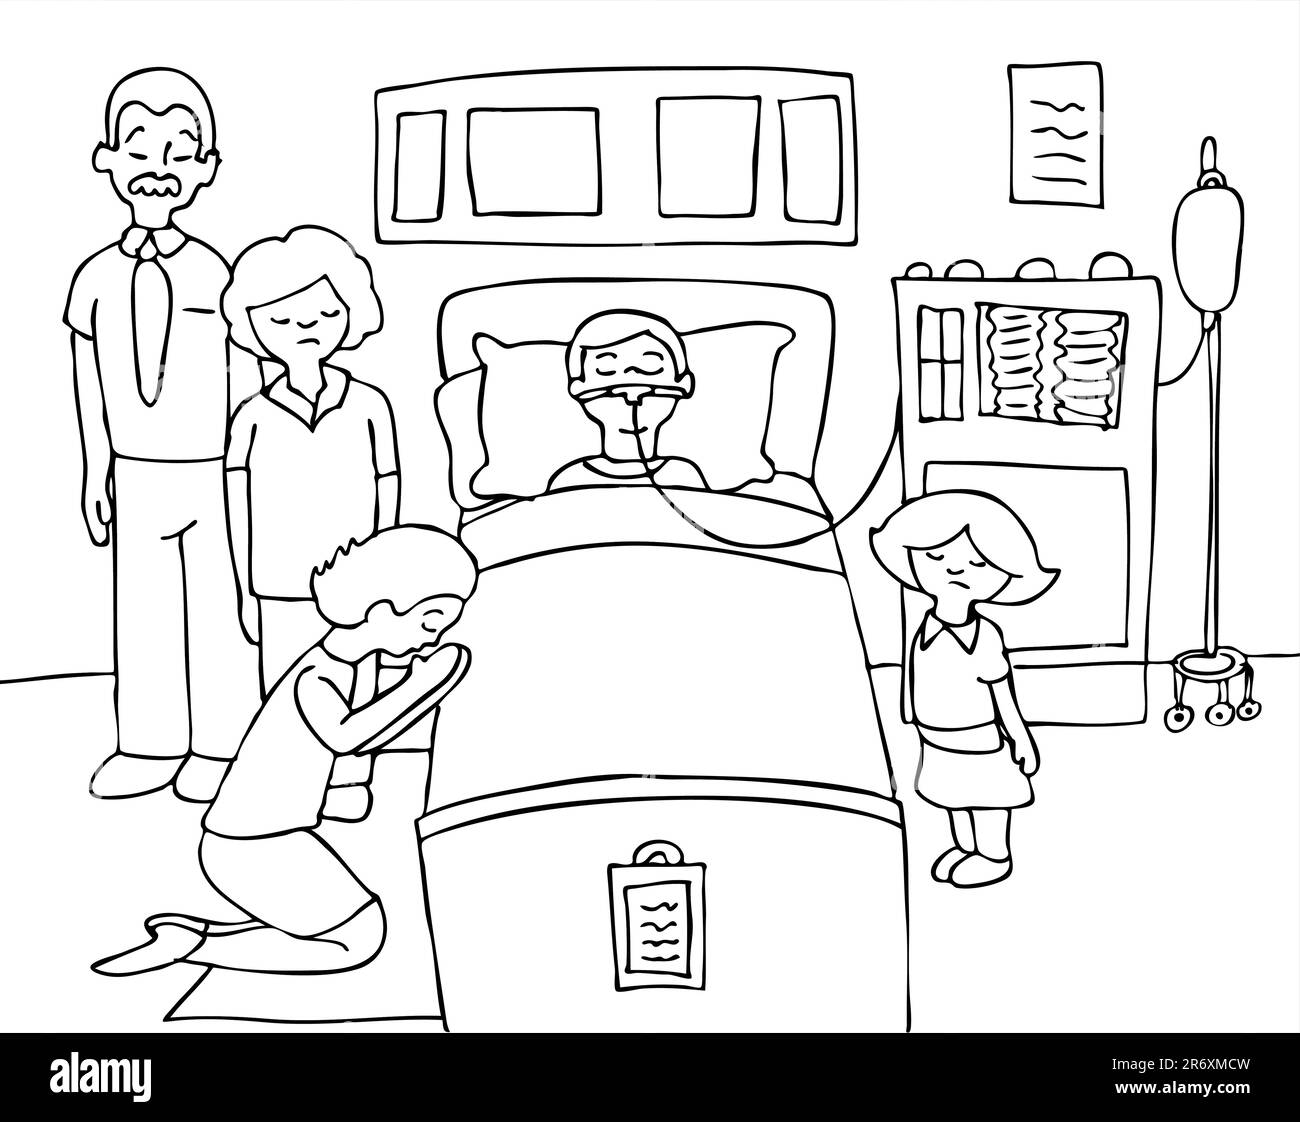 L'enfant malade se trouve dans un lit d'hôpital avec sa famille prier pour son rétablissement - noir et blanc Illustration de Vecteur